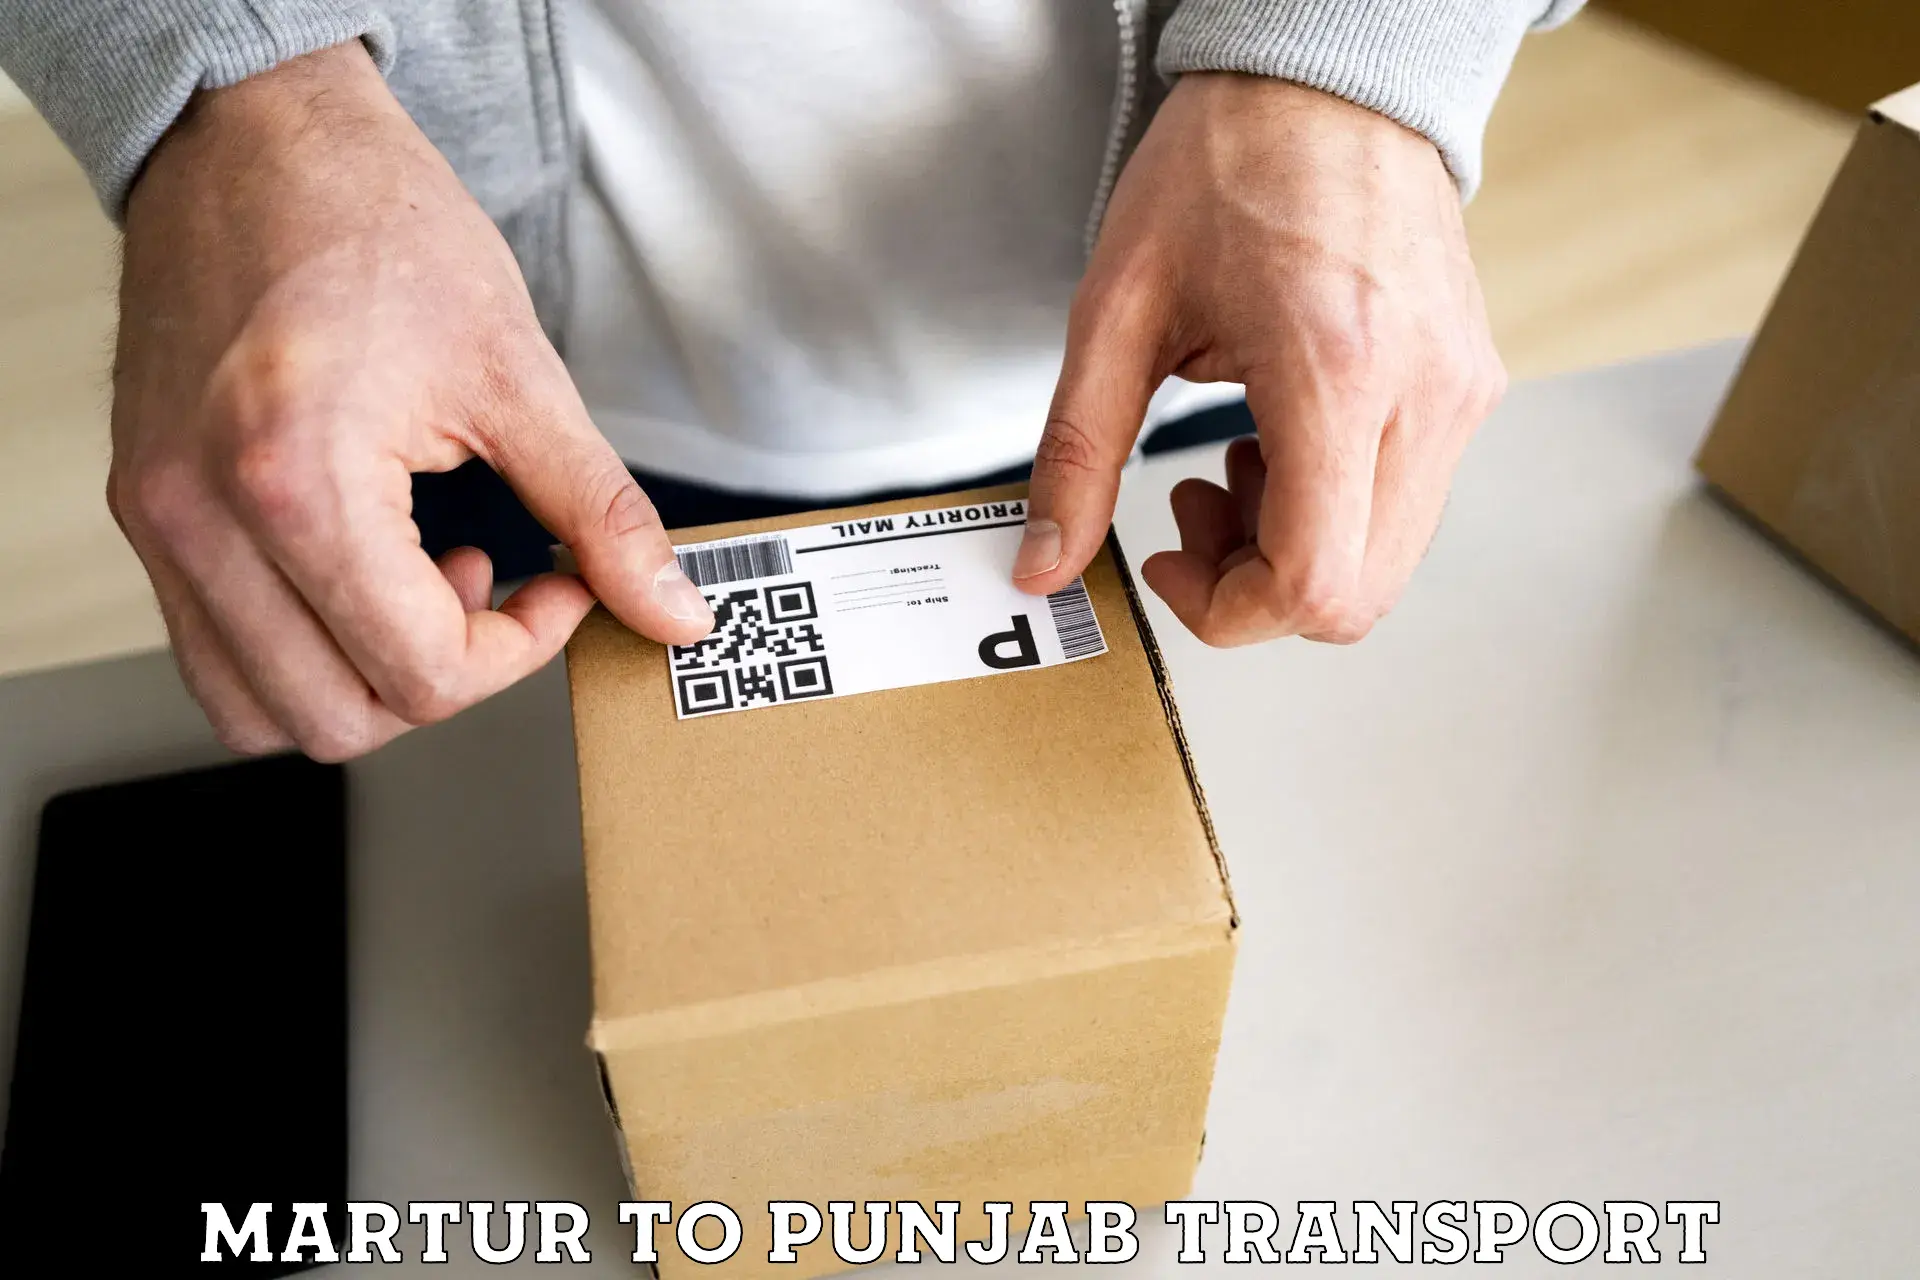 Two wheeler parcel service Martur to Jalandhar